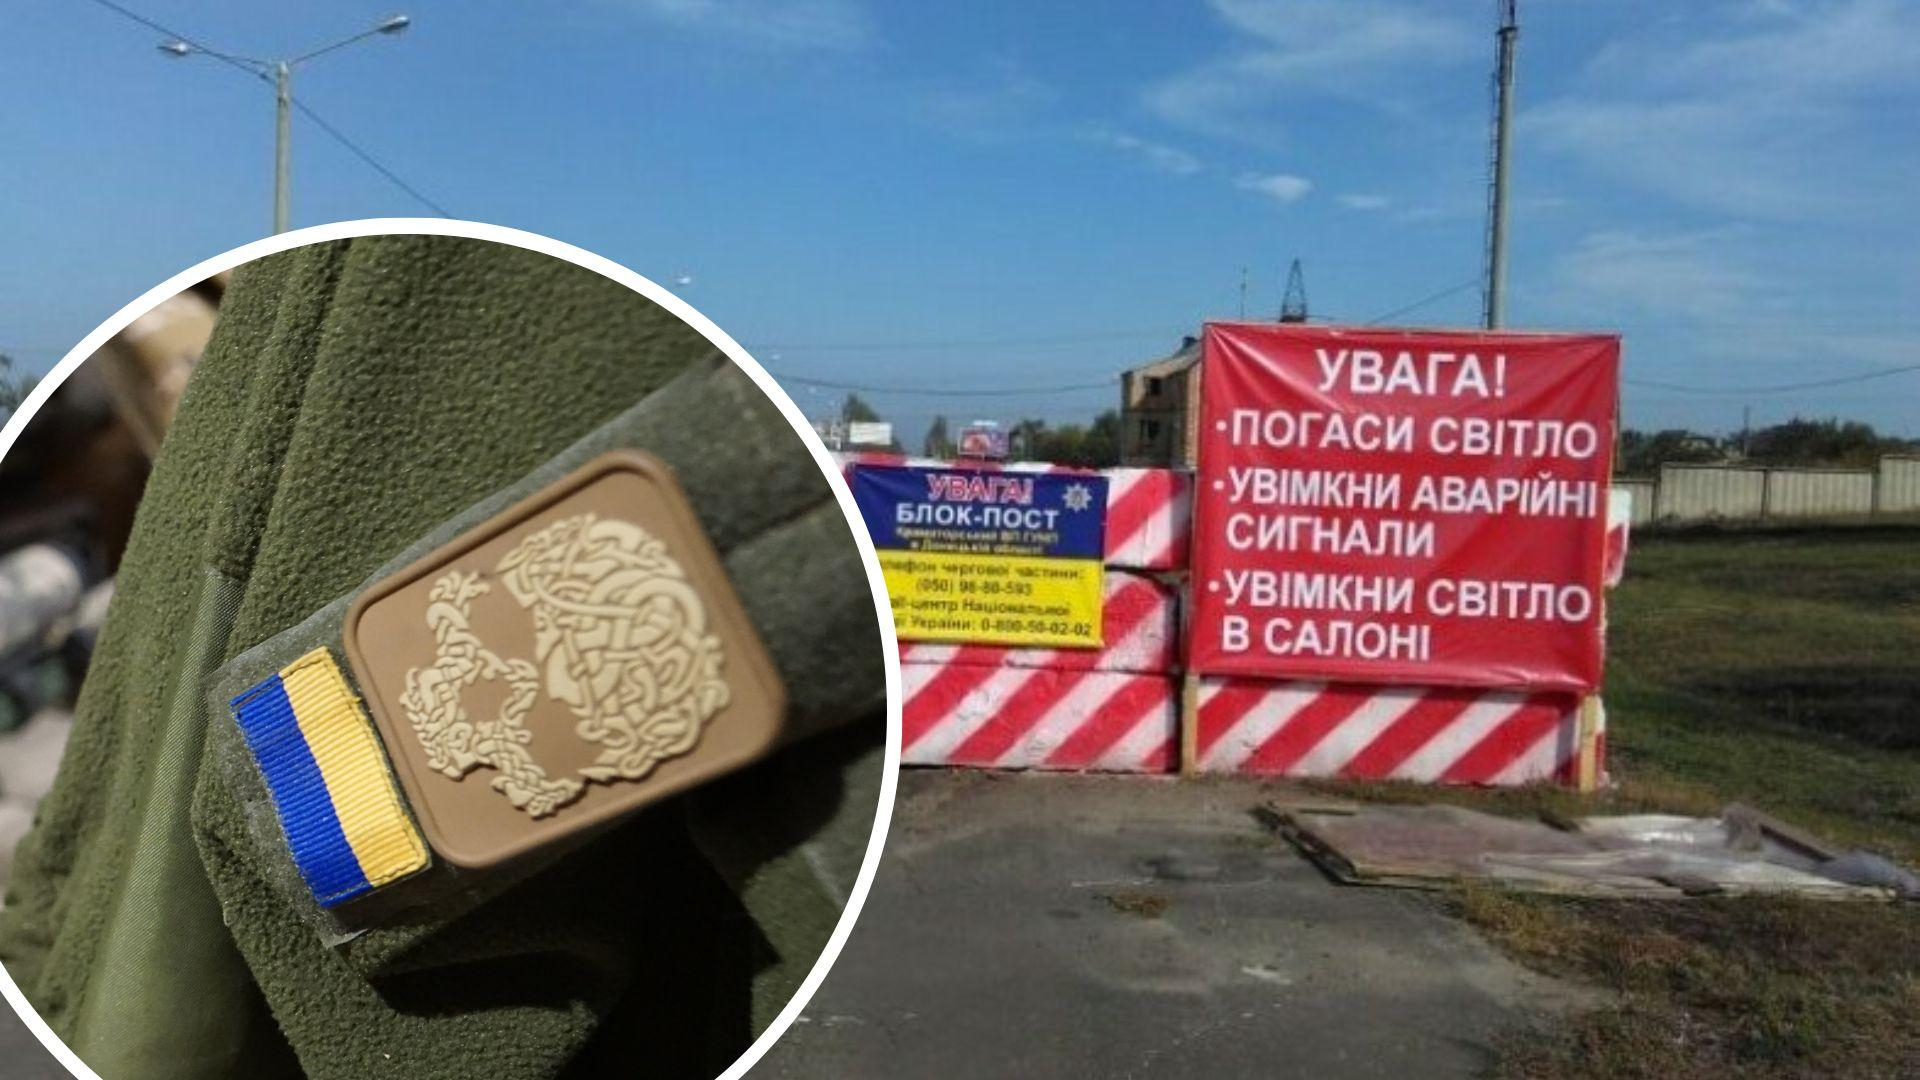 Обмеження руху для військовозобов'язаних - як реагують українці